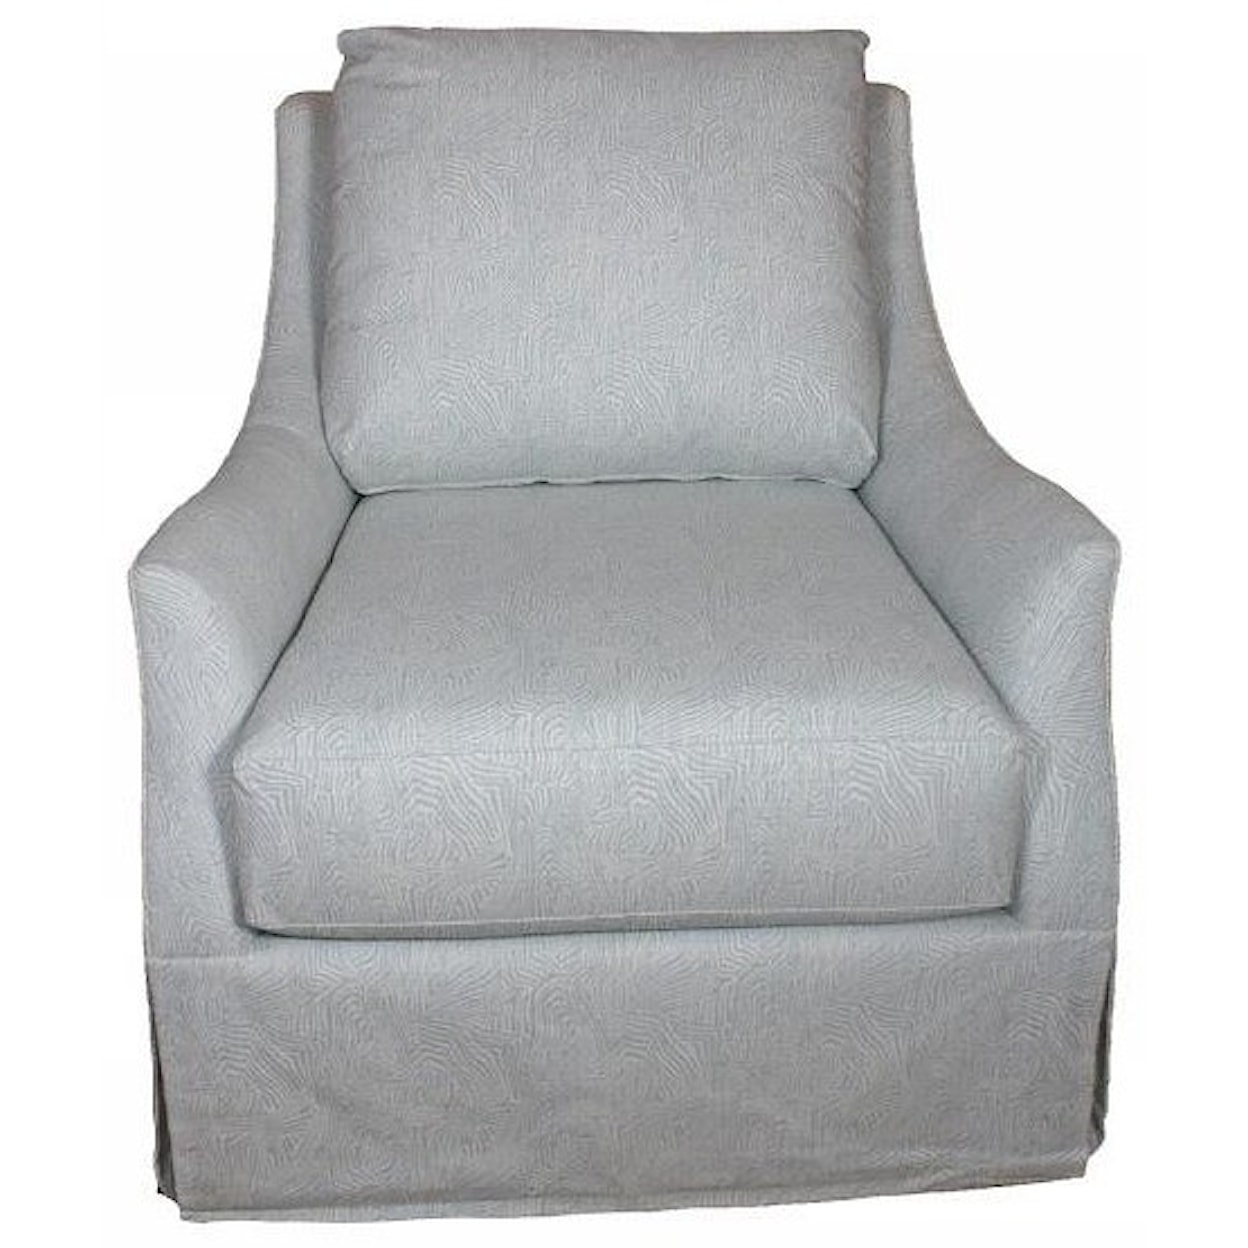 Vanguard Furniture Envision Custom Upholstery Upholstered Swivel Chair